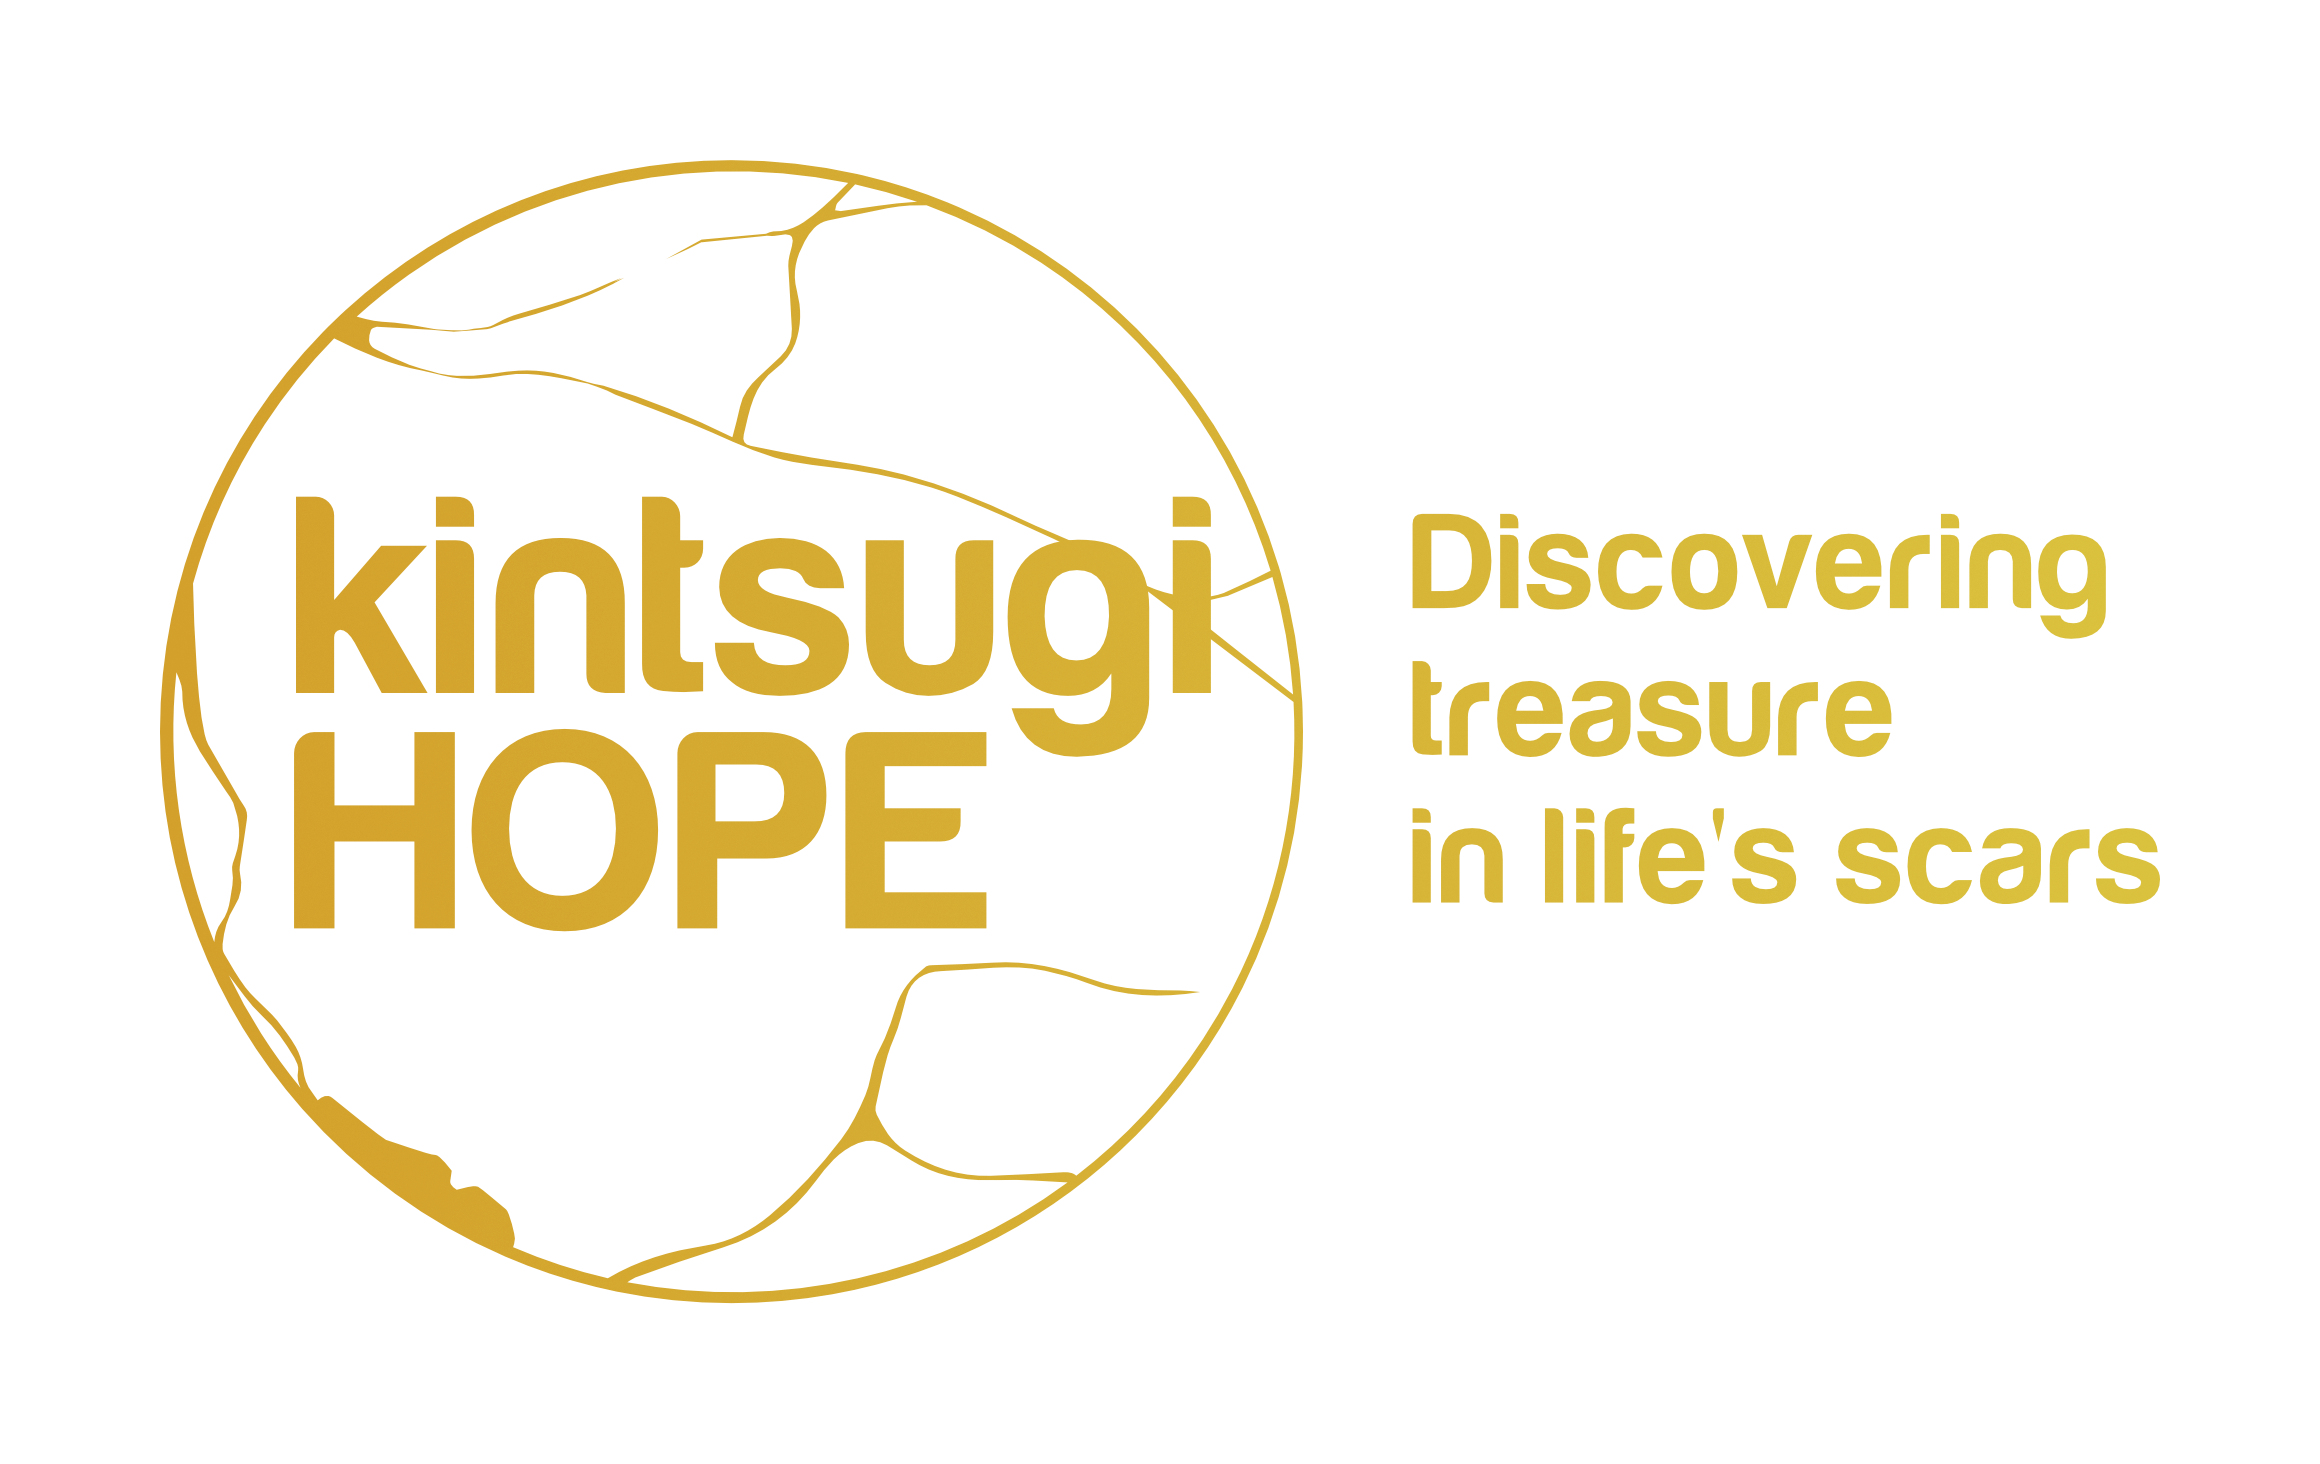 Kintsugi HOPE logo gold